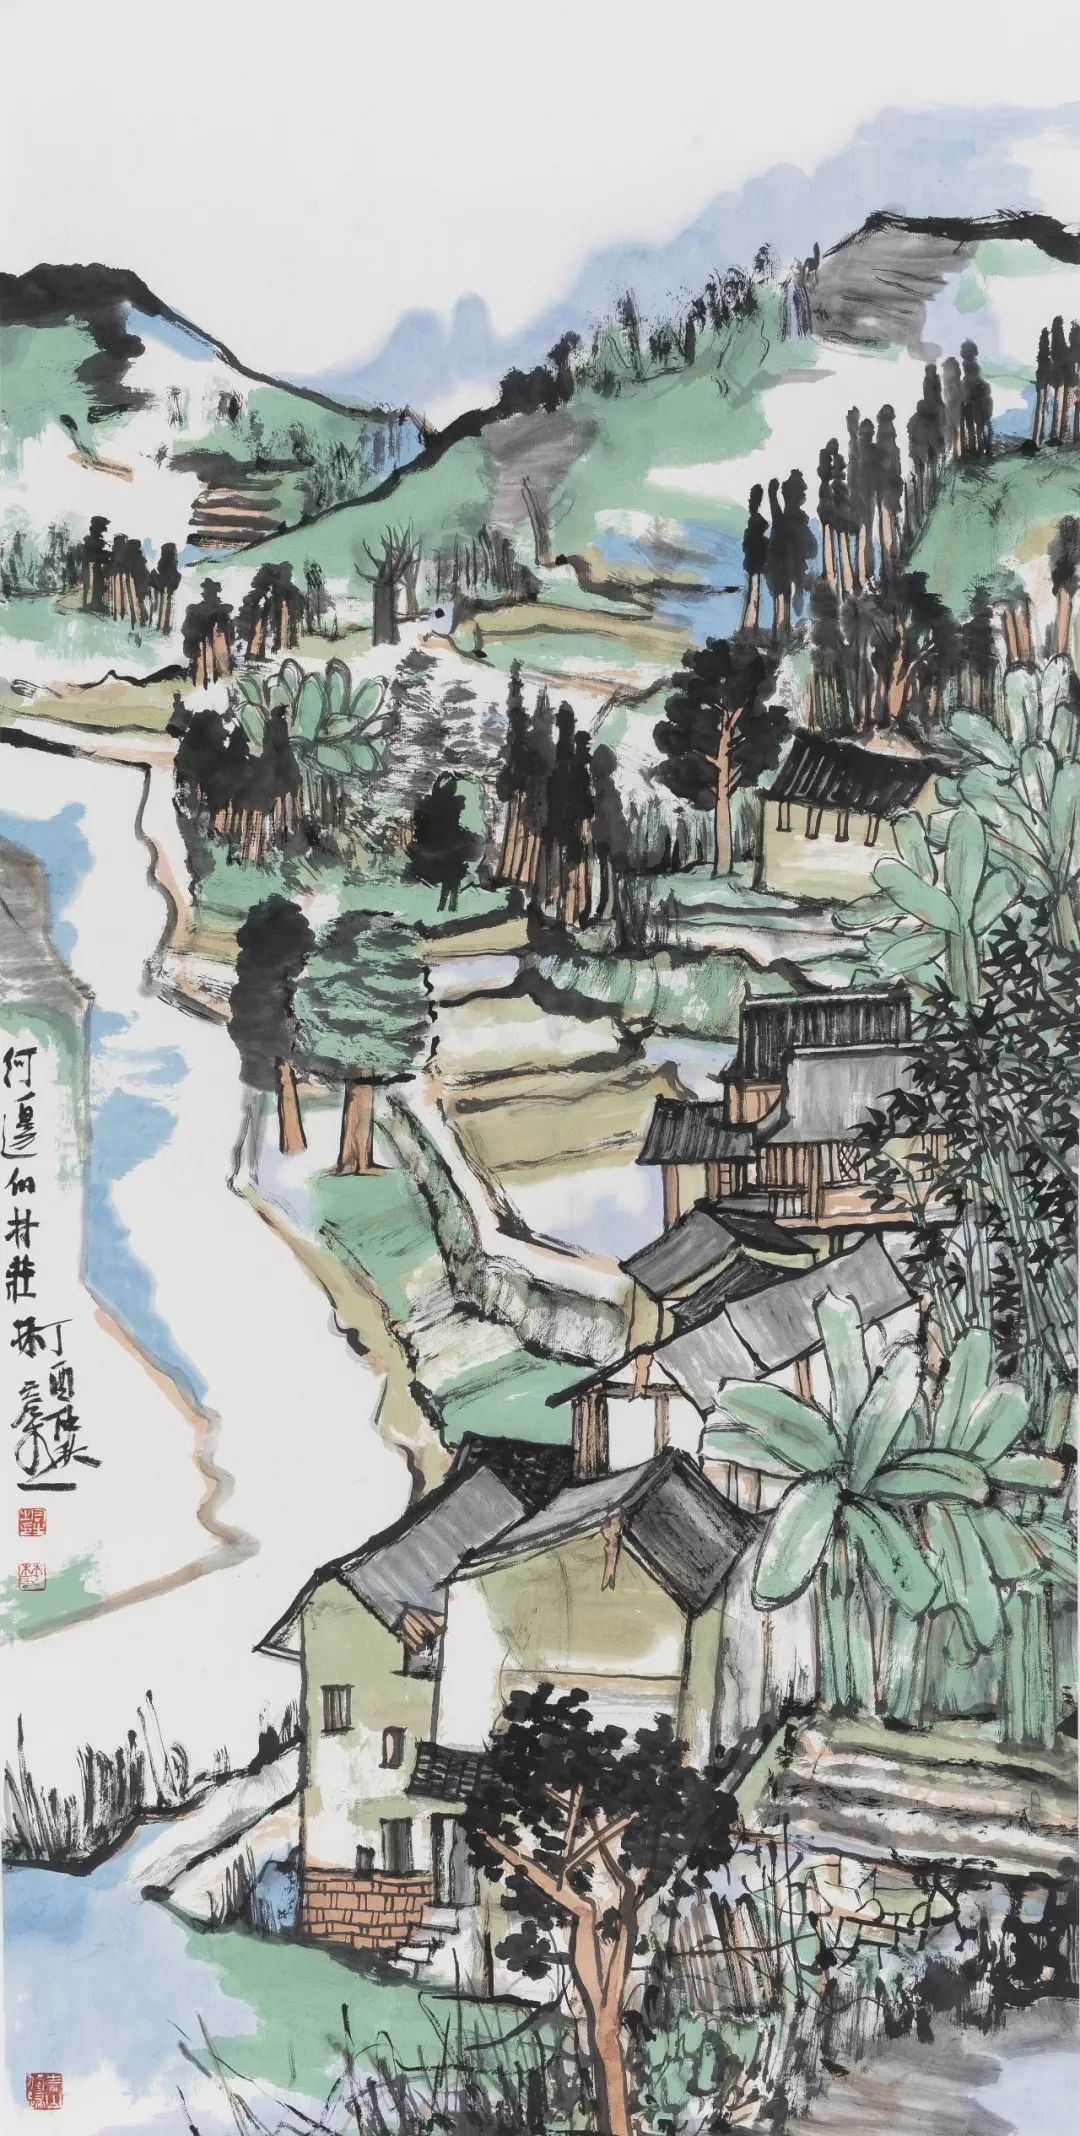 林容生 《河边的村庄》 纸本水墨设色 136×68cm 2017年